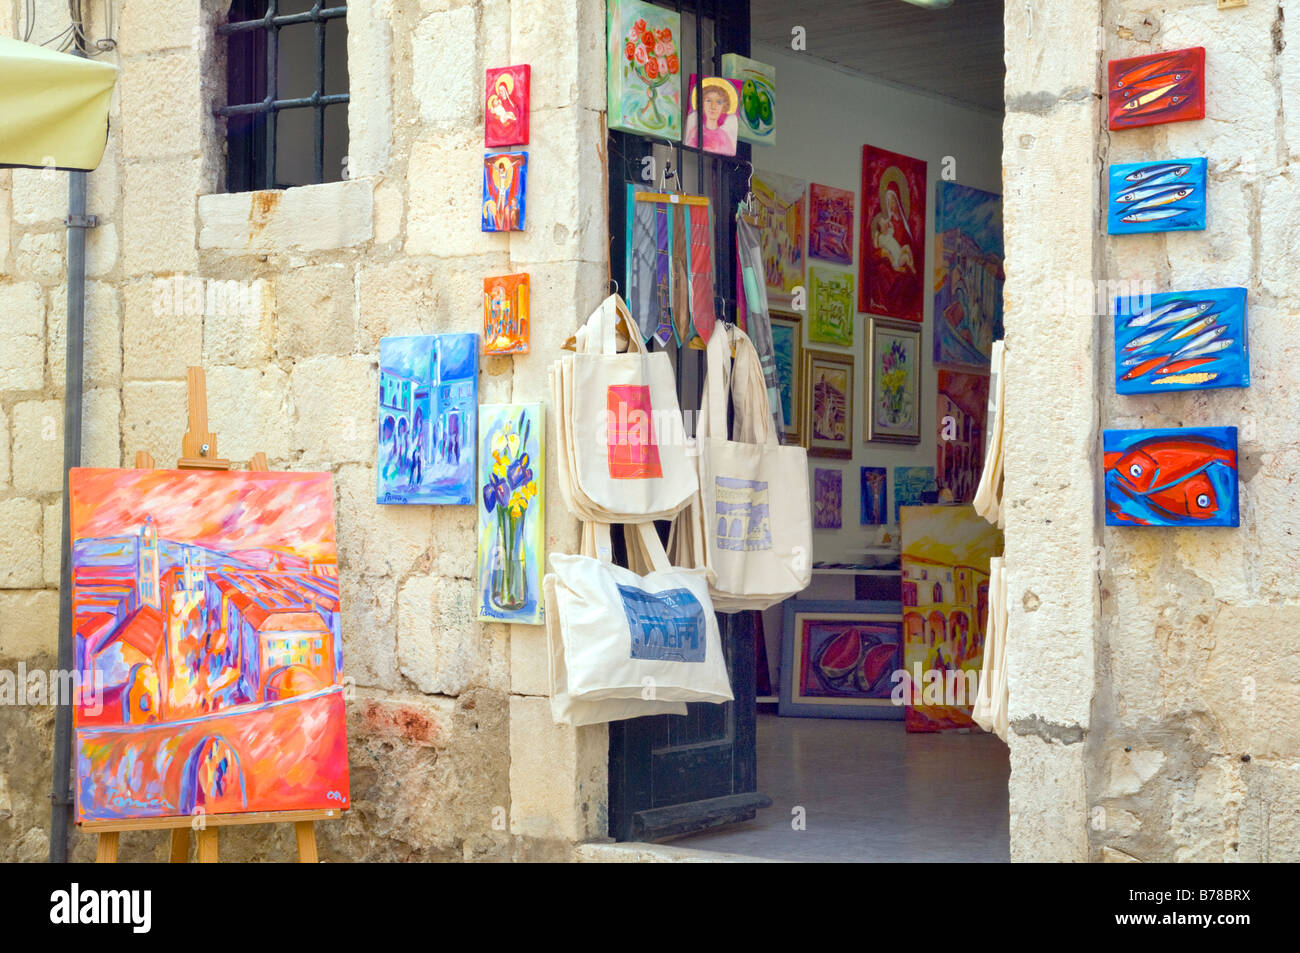 Une boutique qui vend des peintures et de l'artisanat dans les rues de la vieille ville de Dubrovnik Croatie Banque D'Images